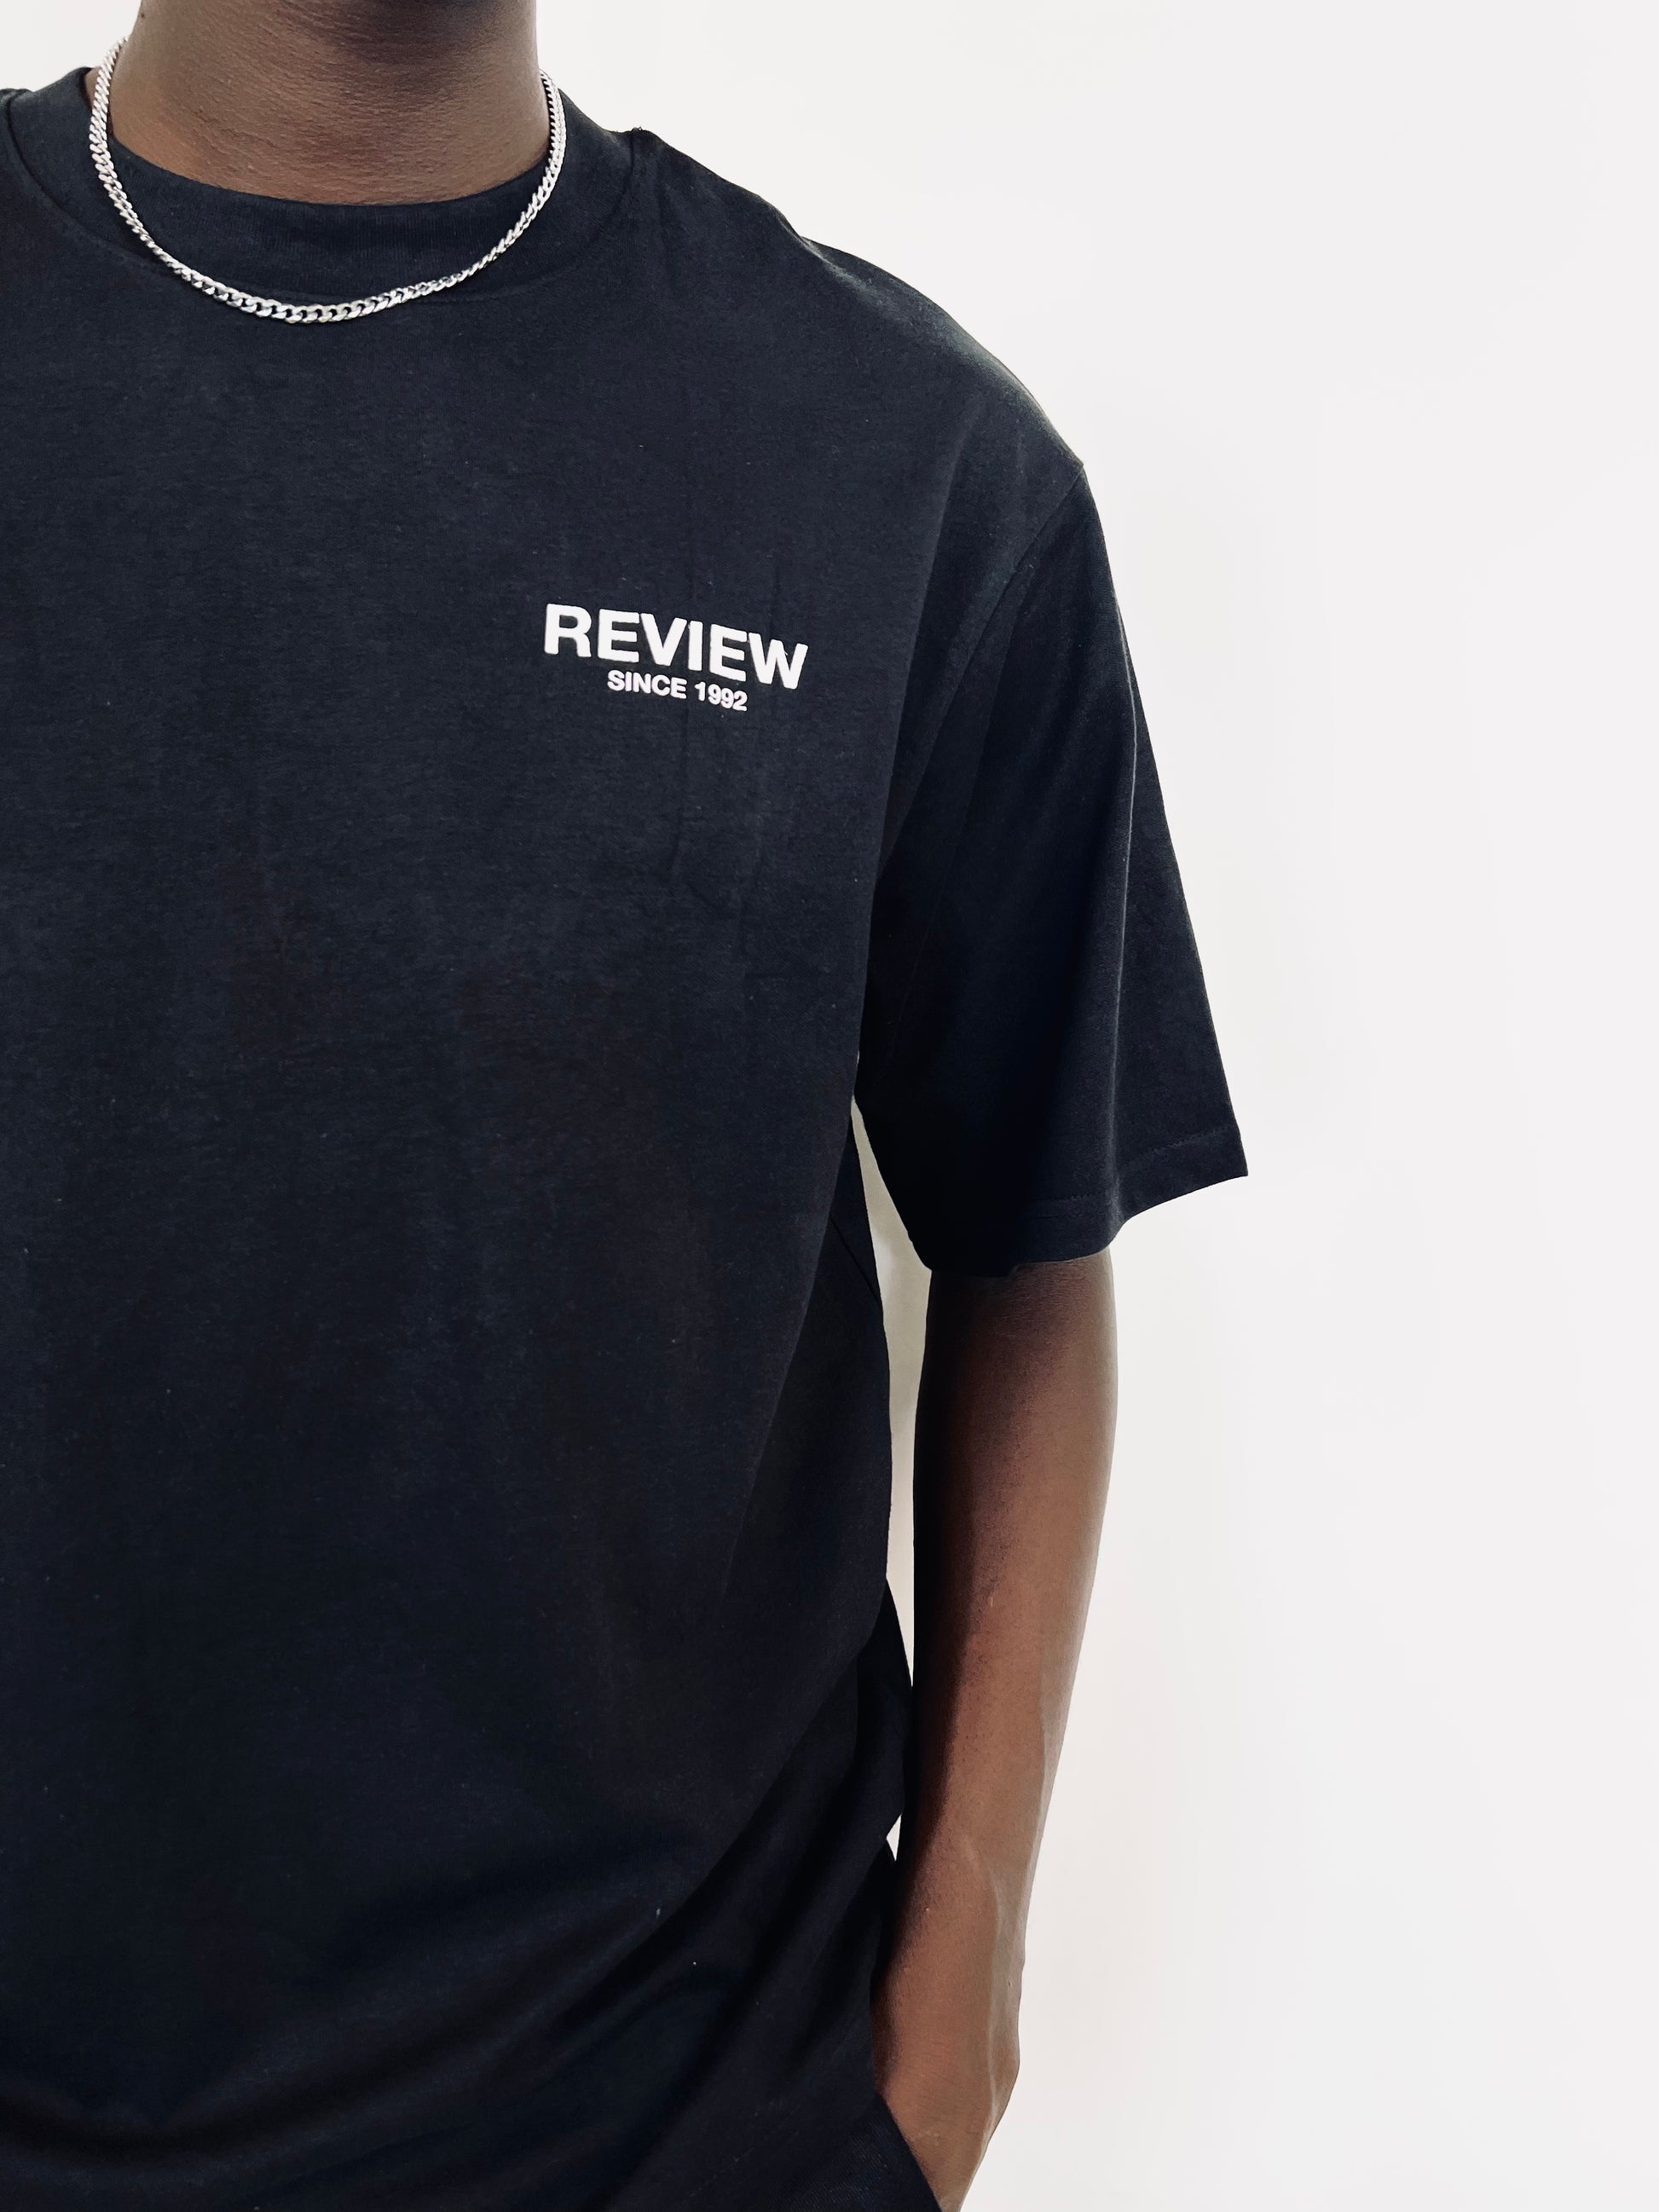 Review backprint t-shirt – Garmisland